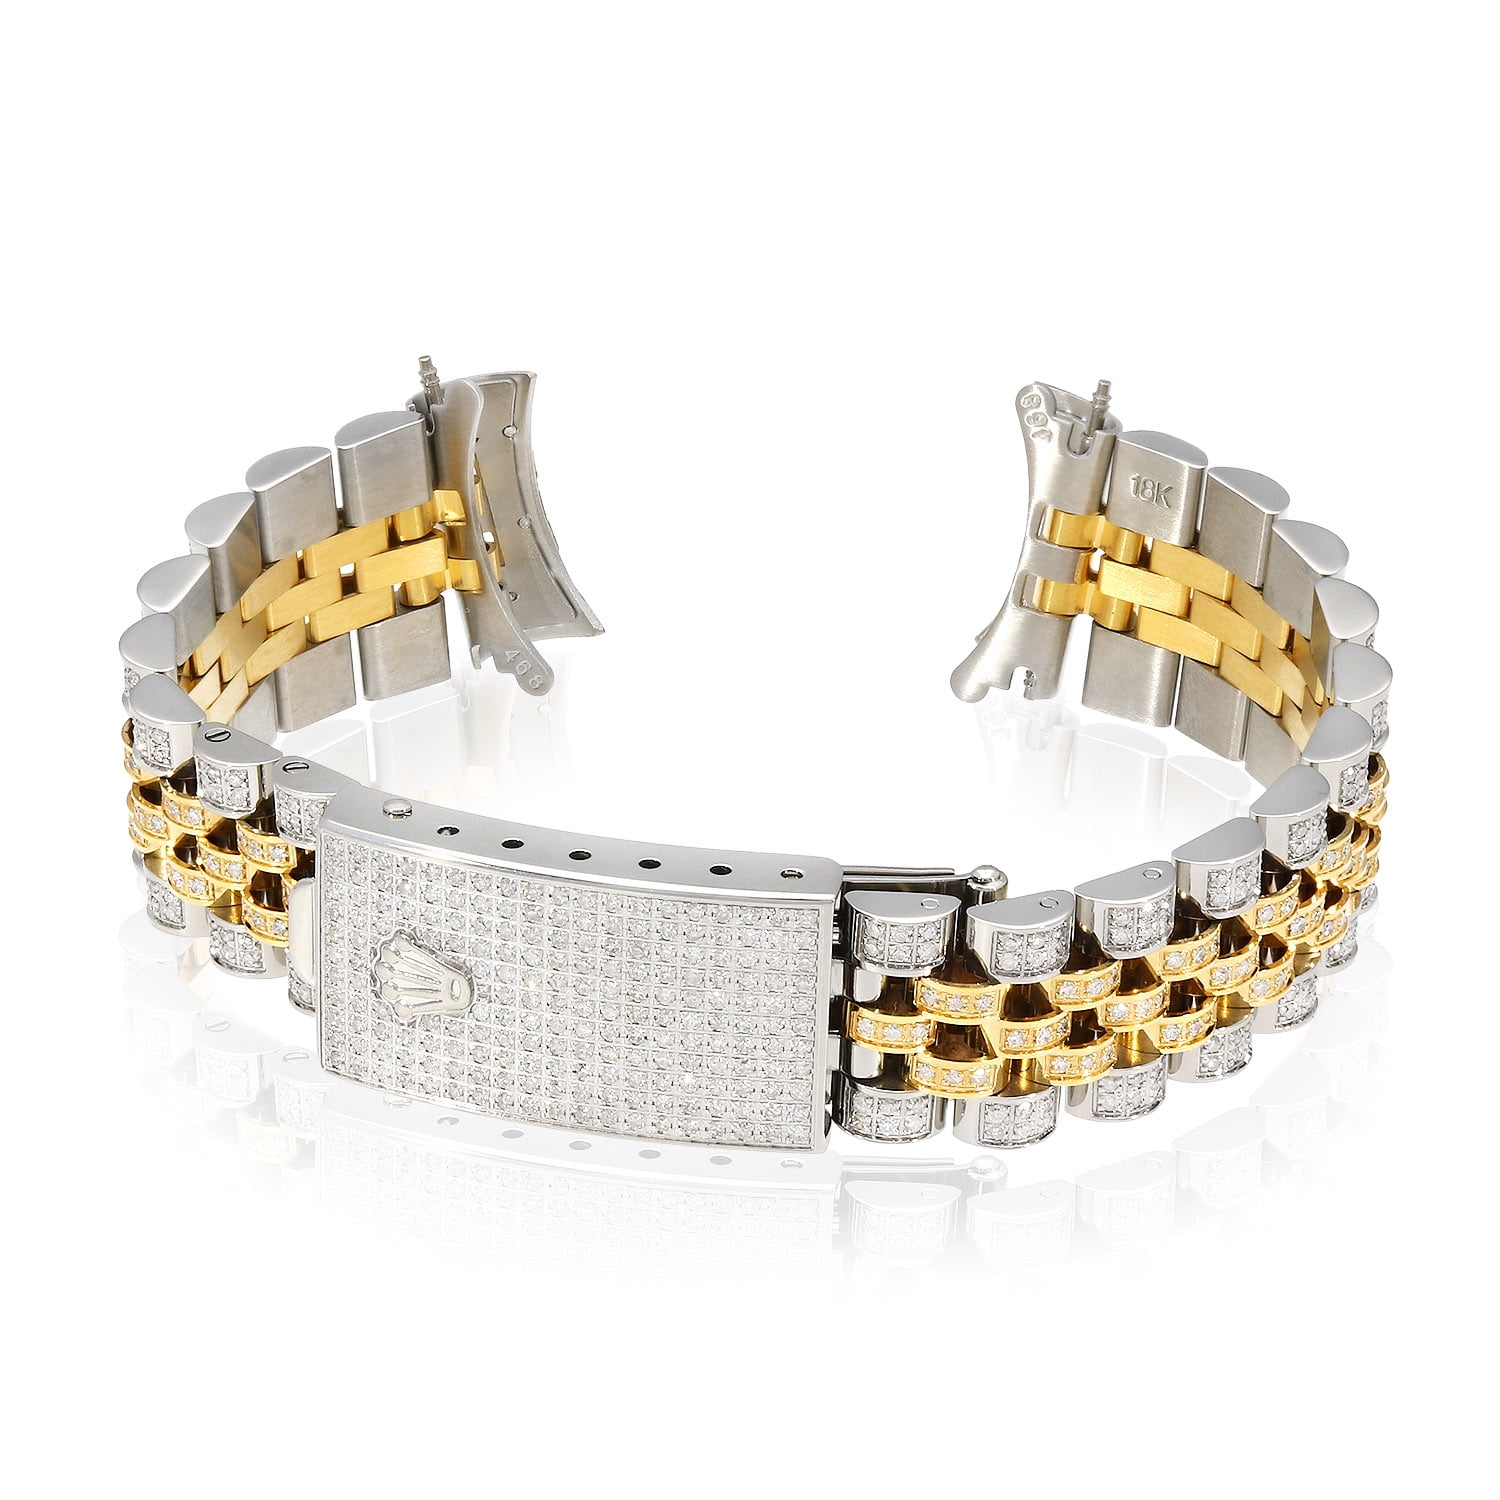 Details more than 150 rolex diamond bracelet mens